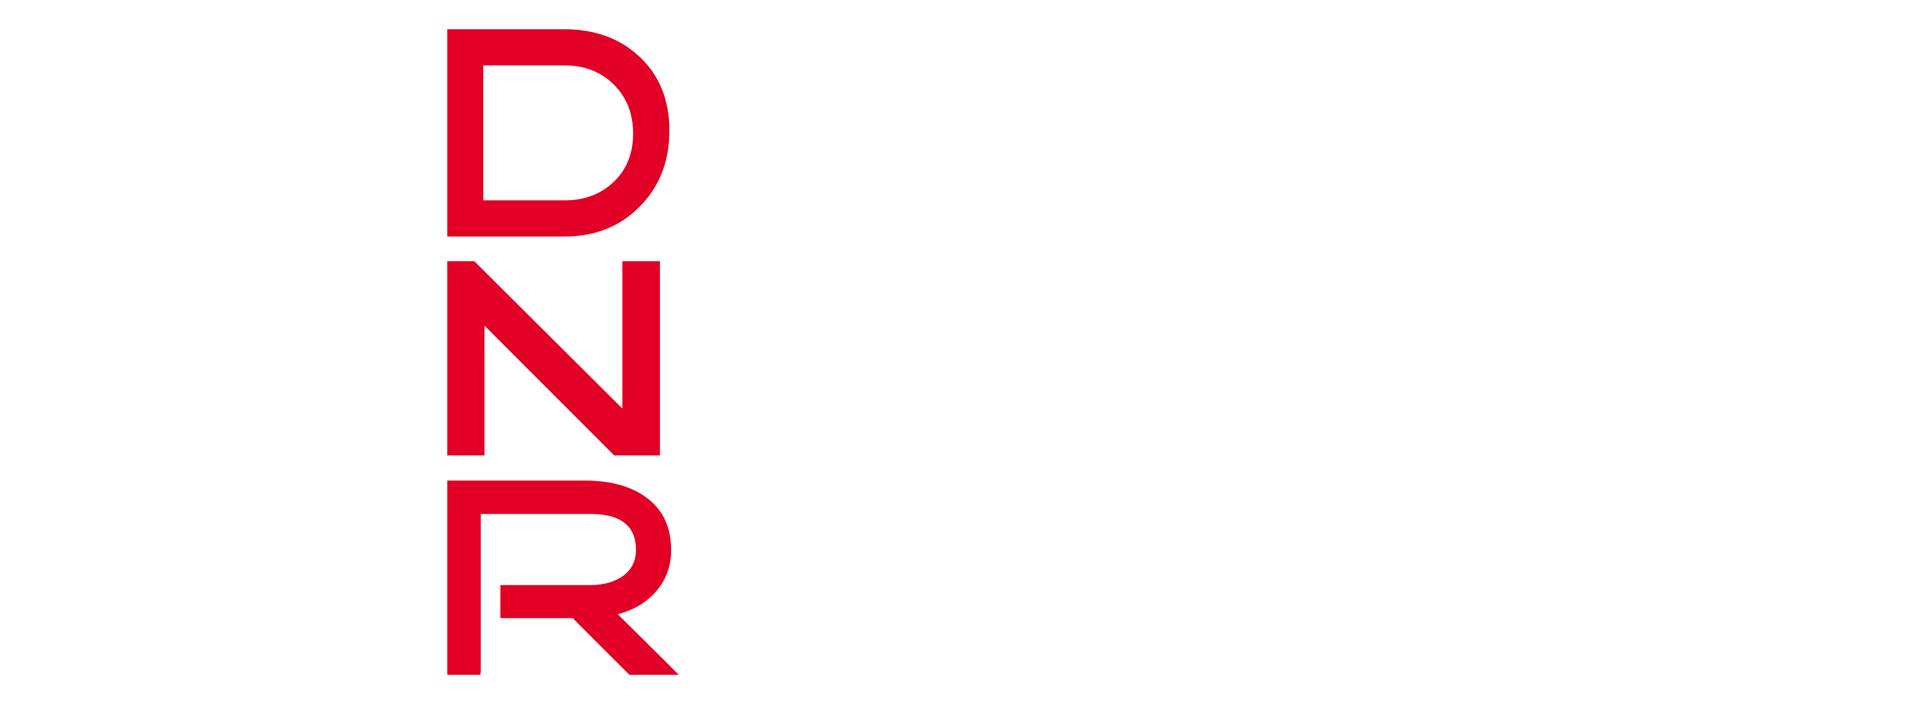 DNR - Daab Nordheim Reutler